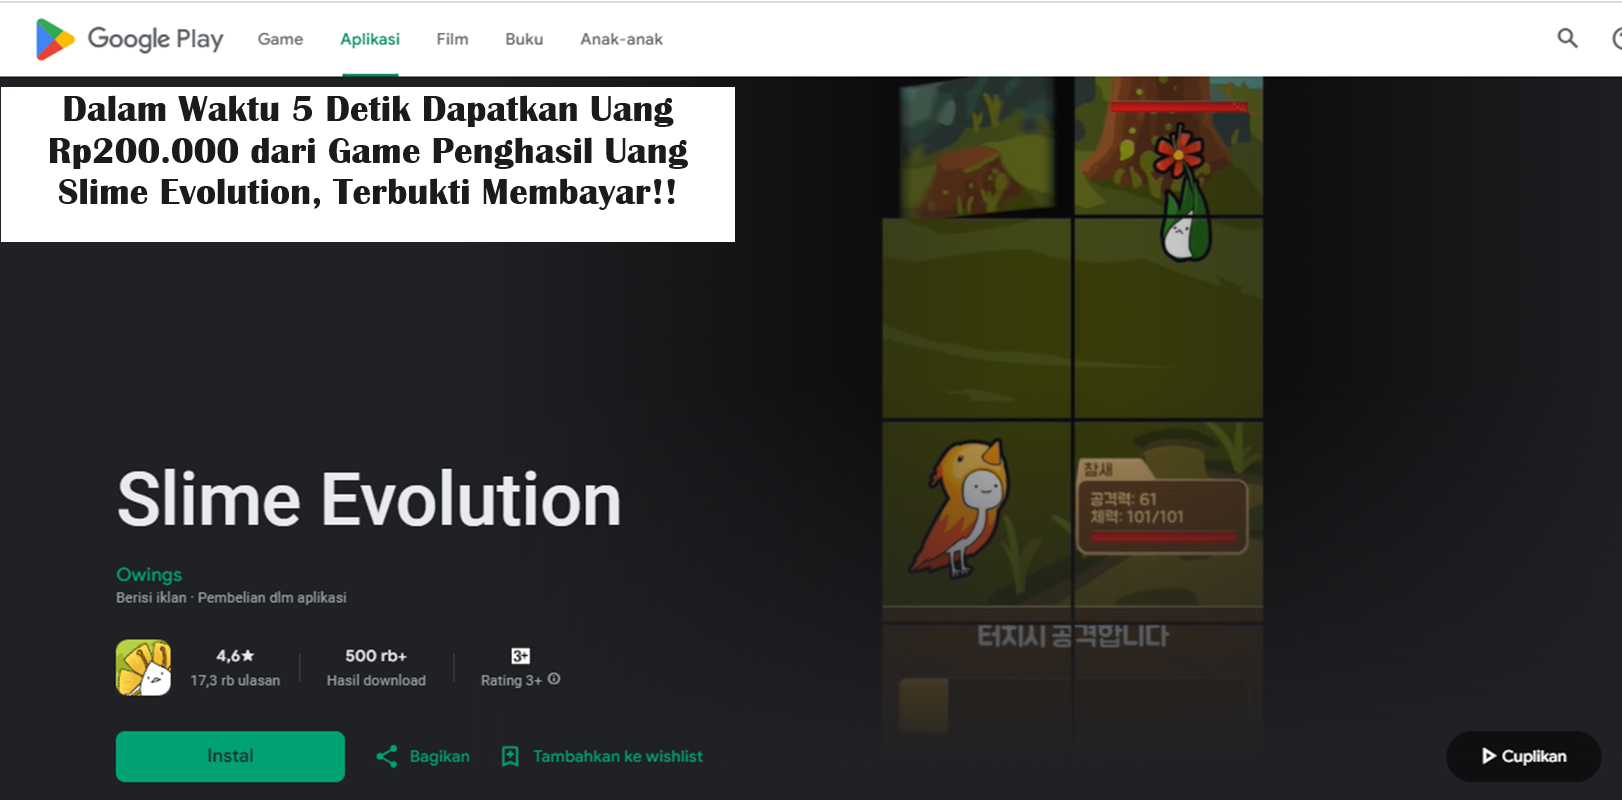 Dalam Waktu 5 Detik Dapatkan Uang Rp200.000 dari Game Penghasil Uang Slime Evolution, Terbukti Membayar!!